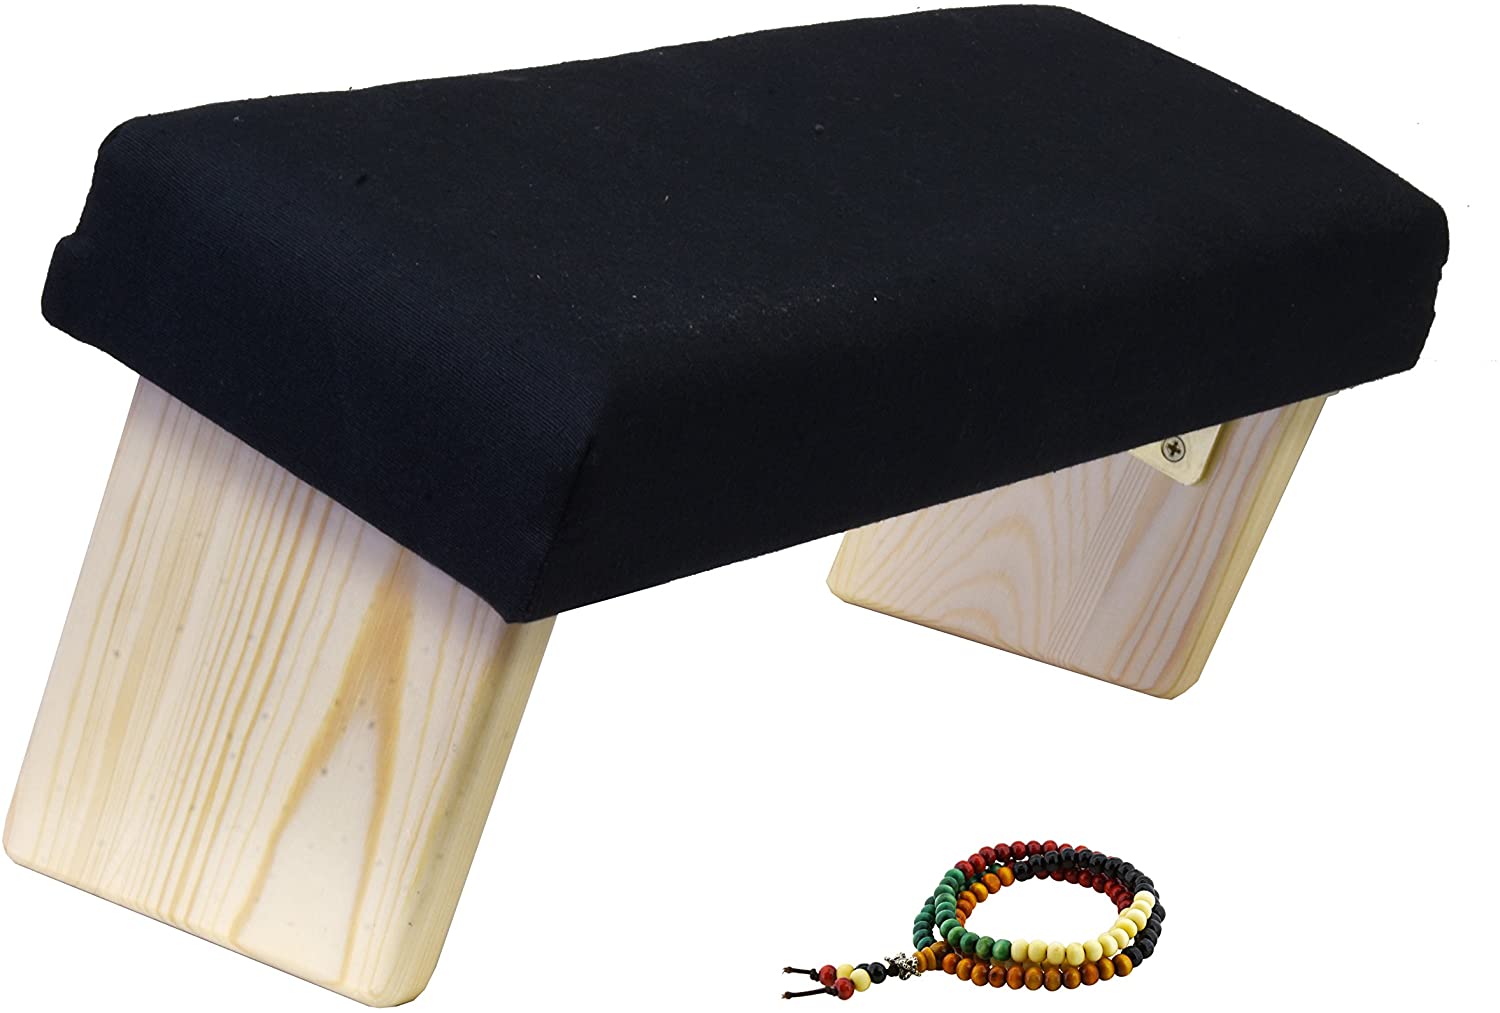 Mudra Crafts Black Wooden Foldable Meditation Bench Kneeling Stool for –  MudraCrafts